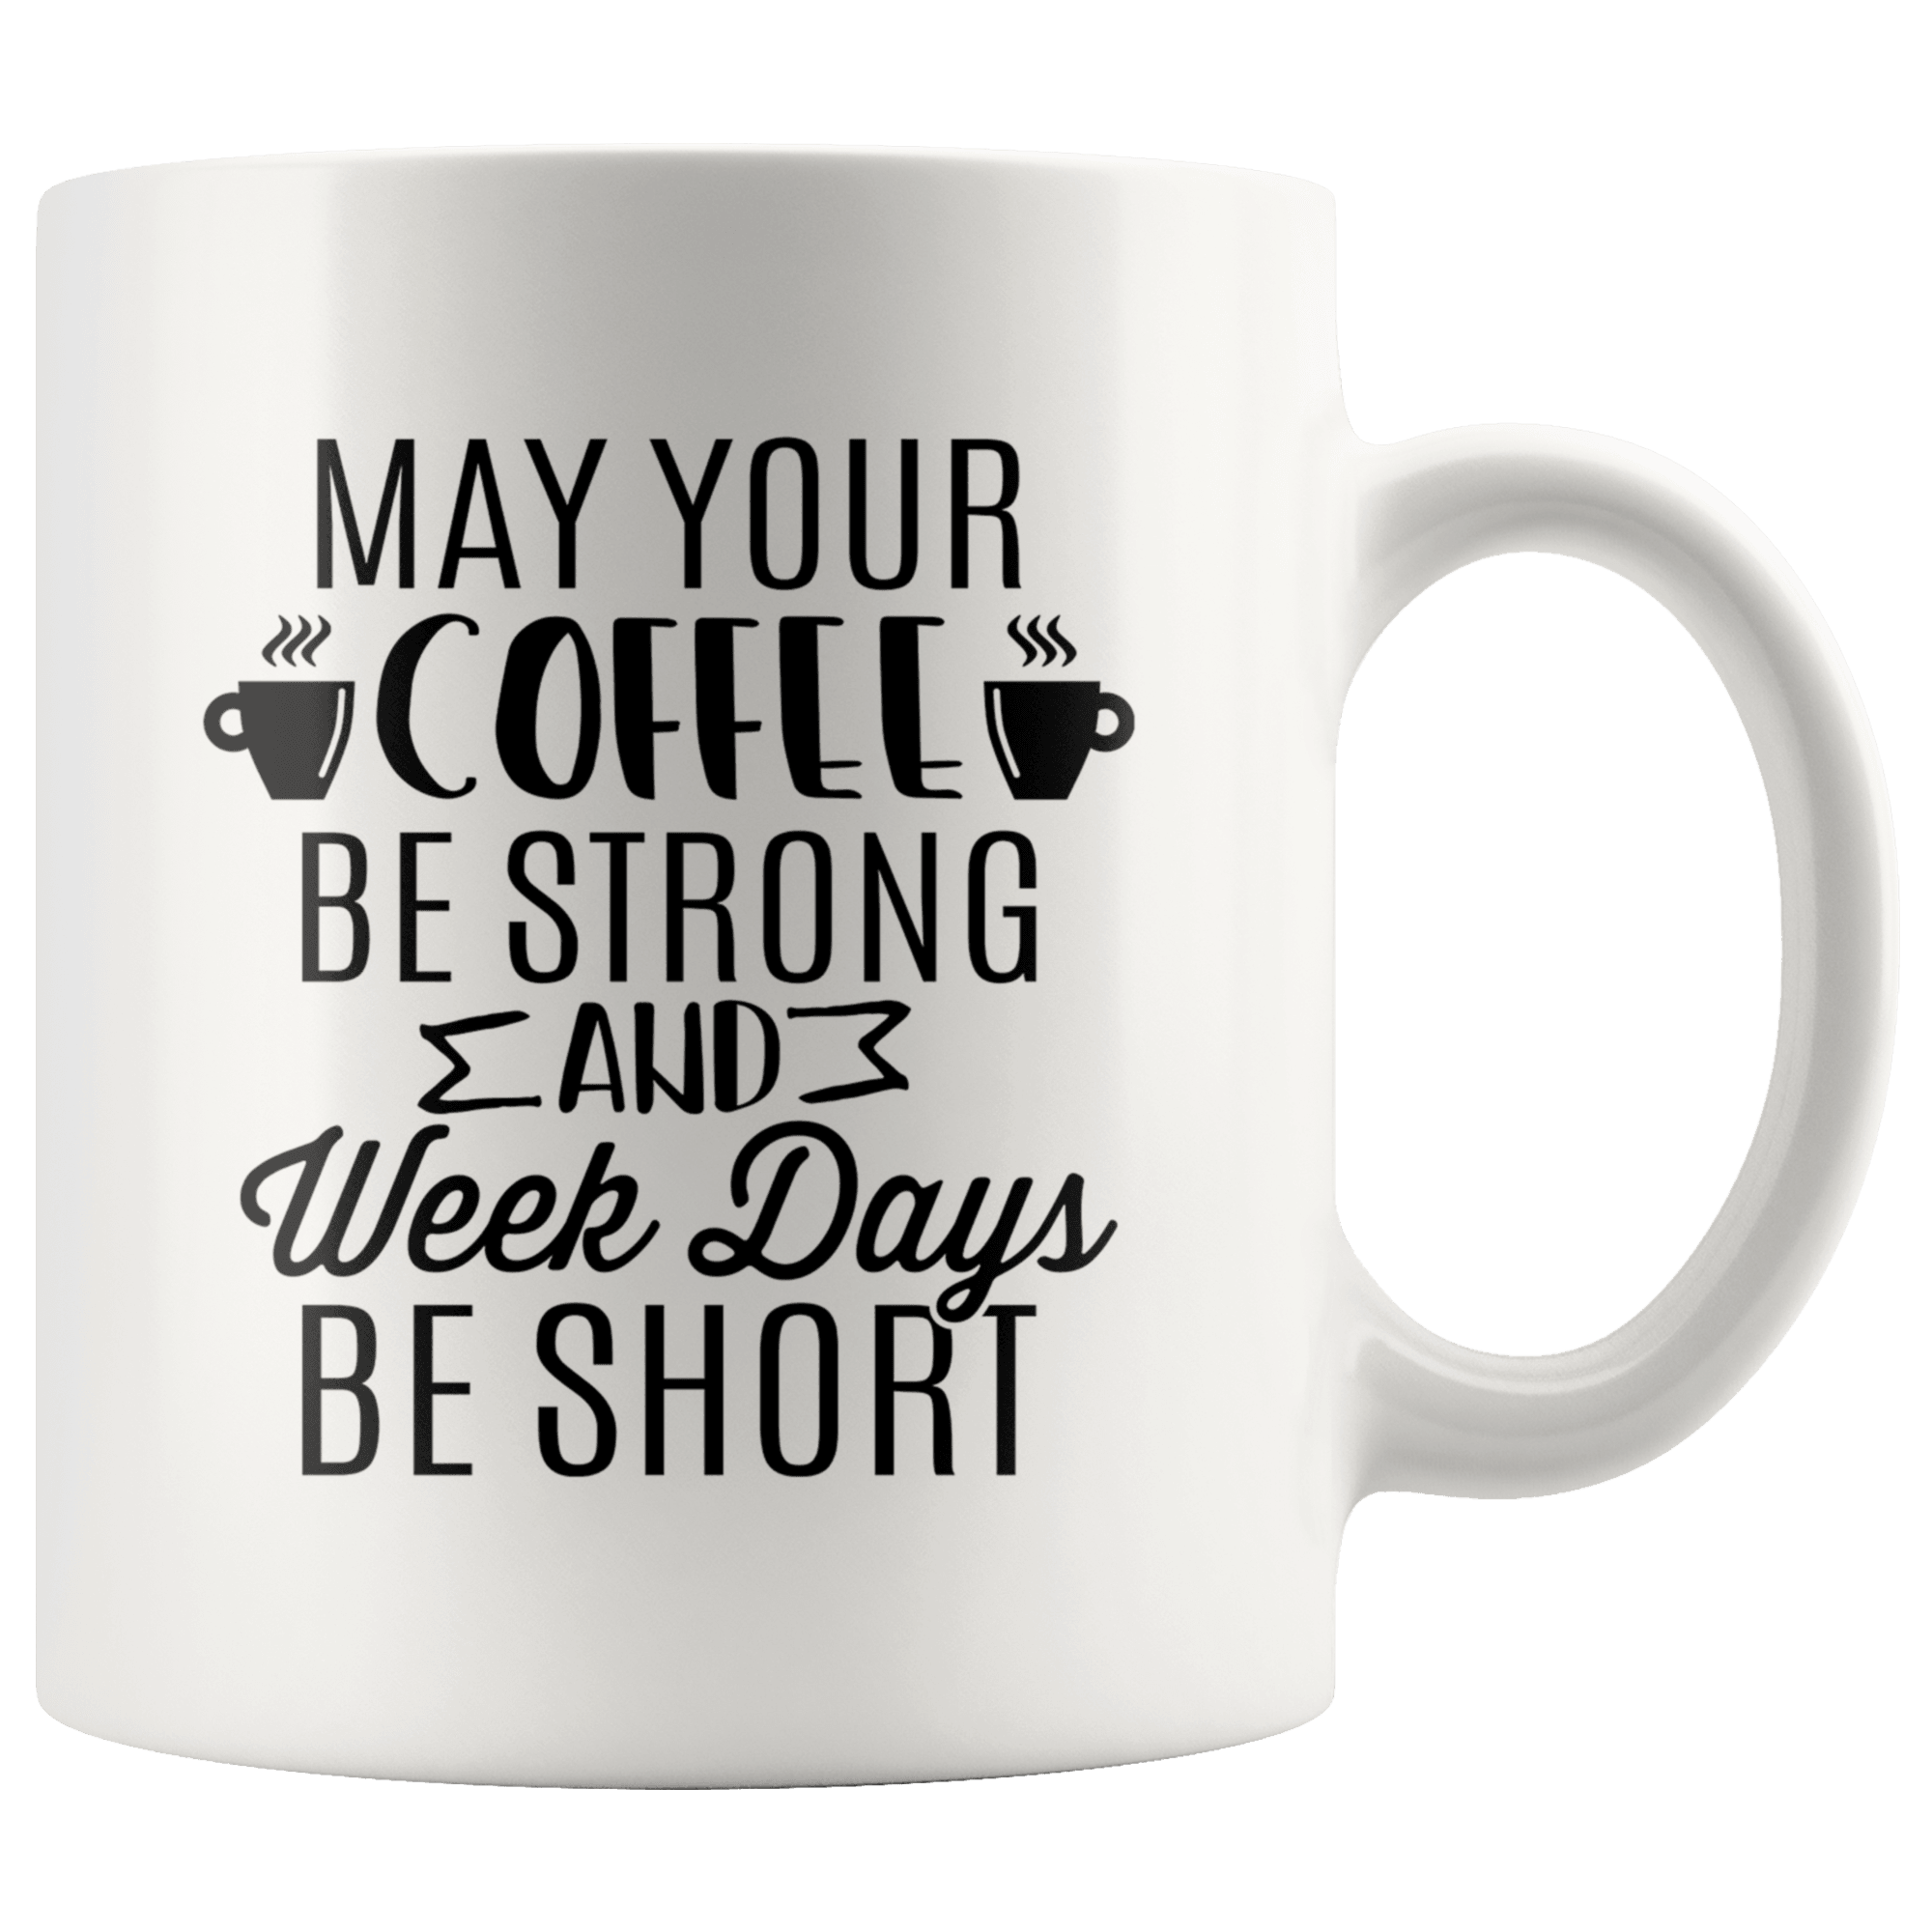 I Only Drink Coffee 3 Days A Week, Coffee Mug, Ceramic Mug 11oz 